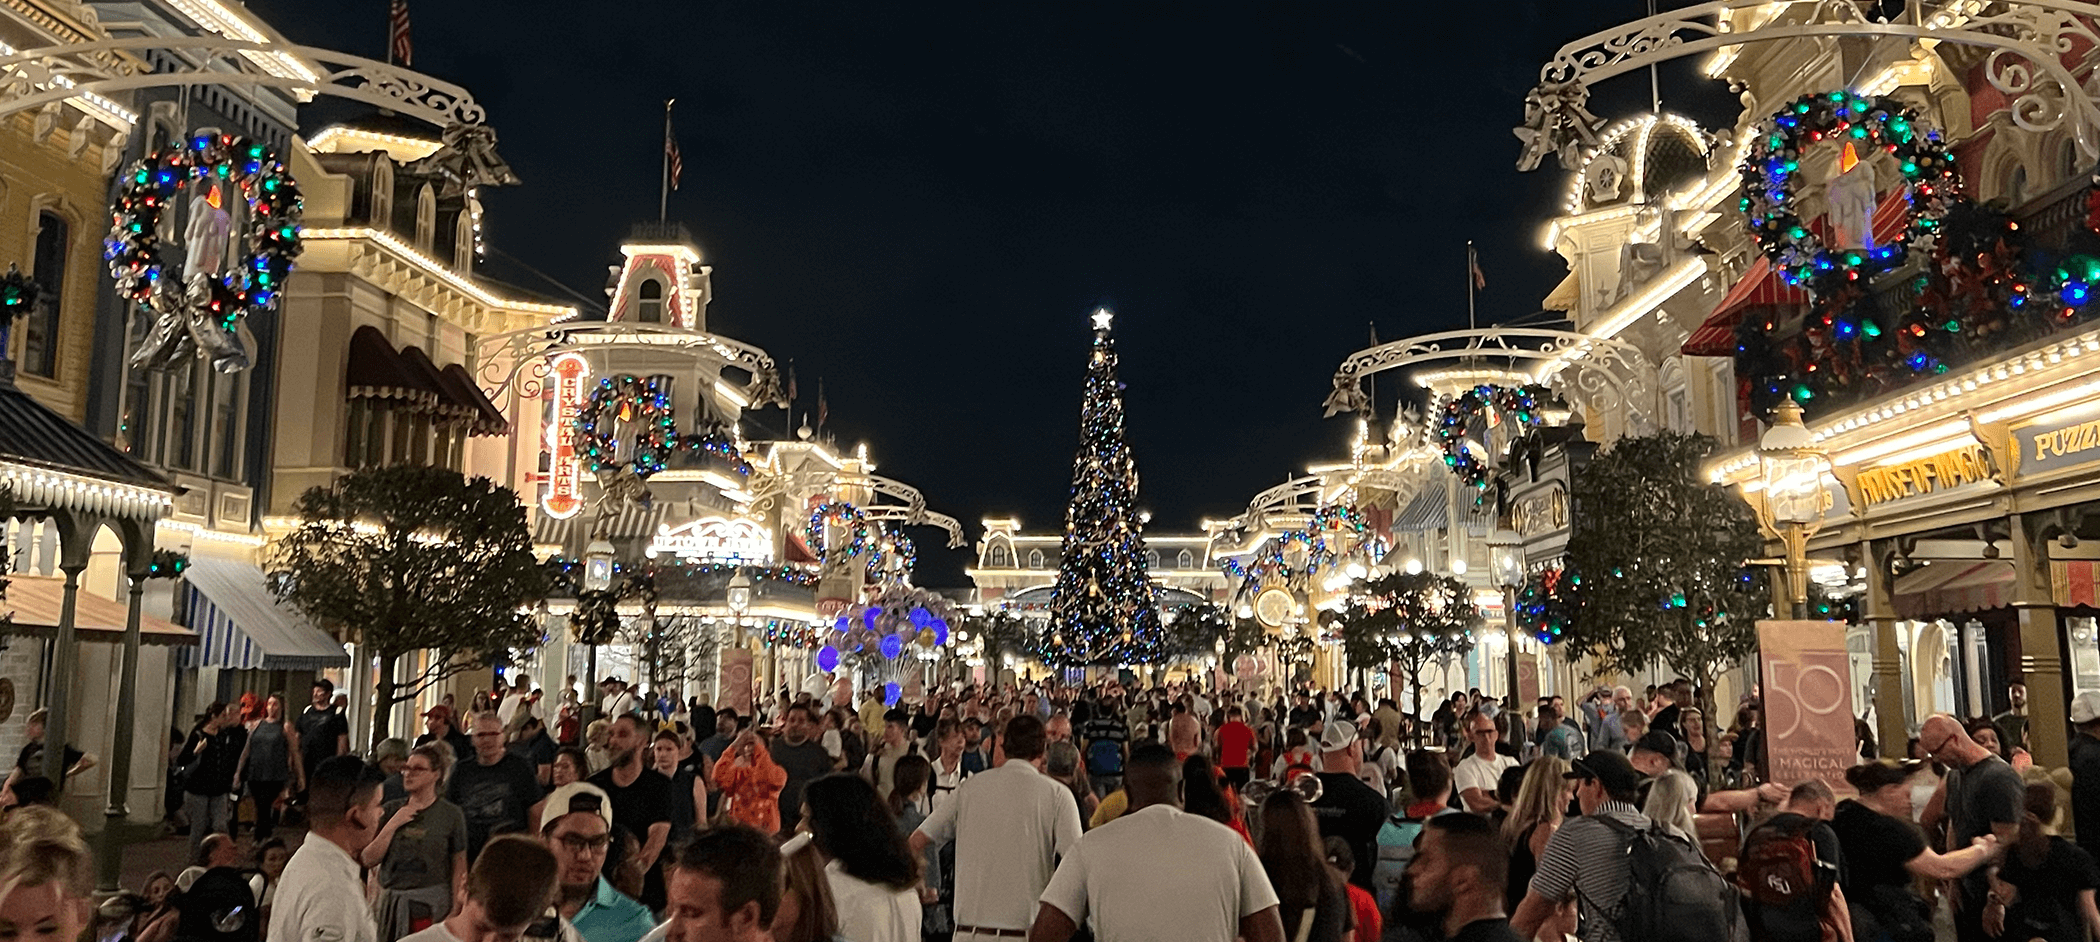 Disney At Christmas